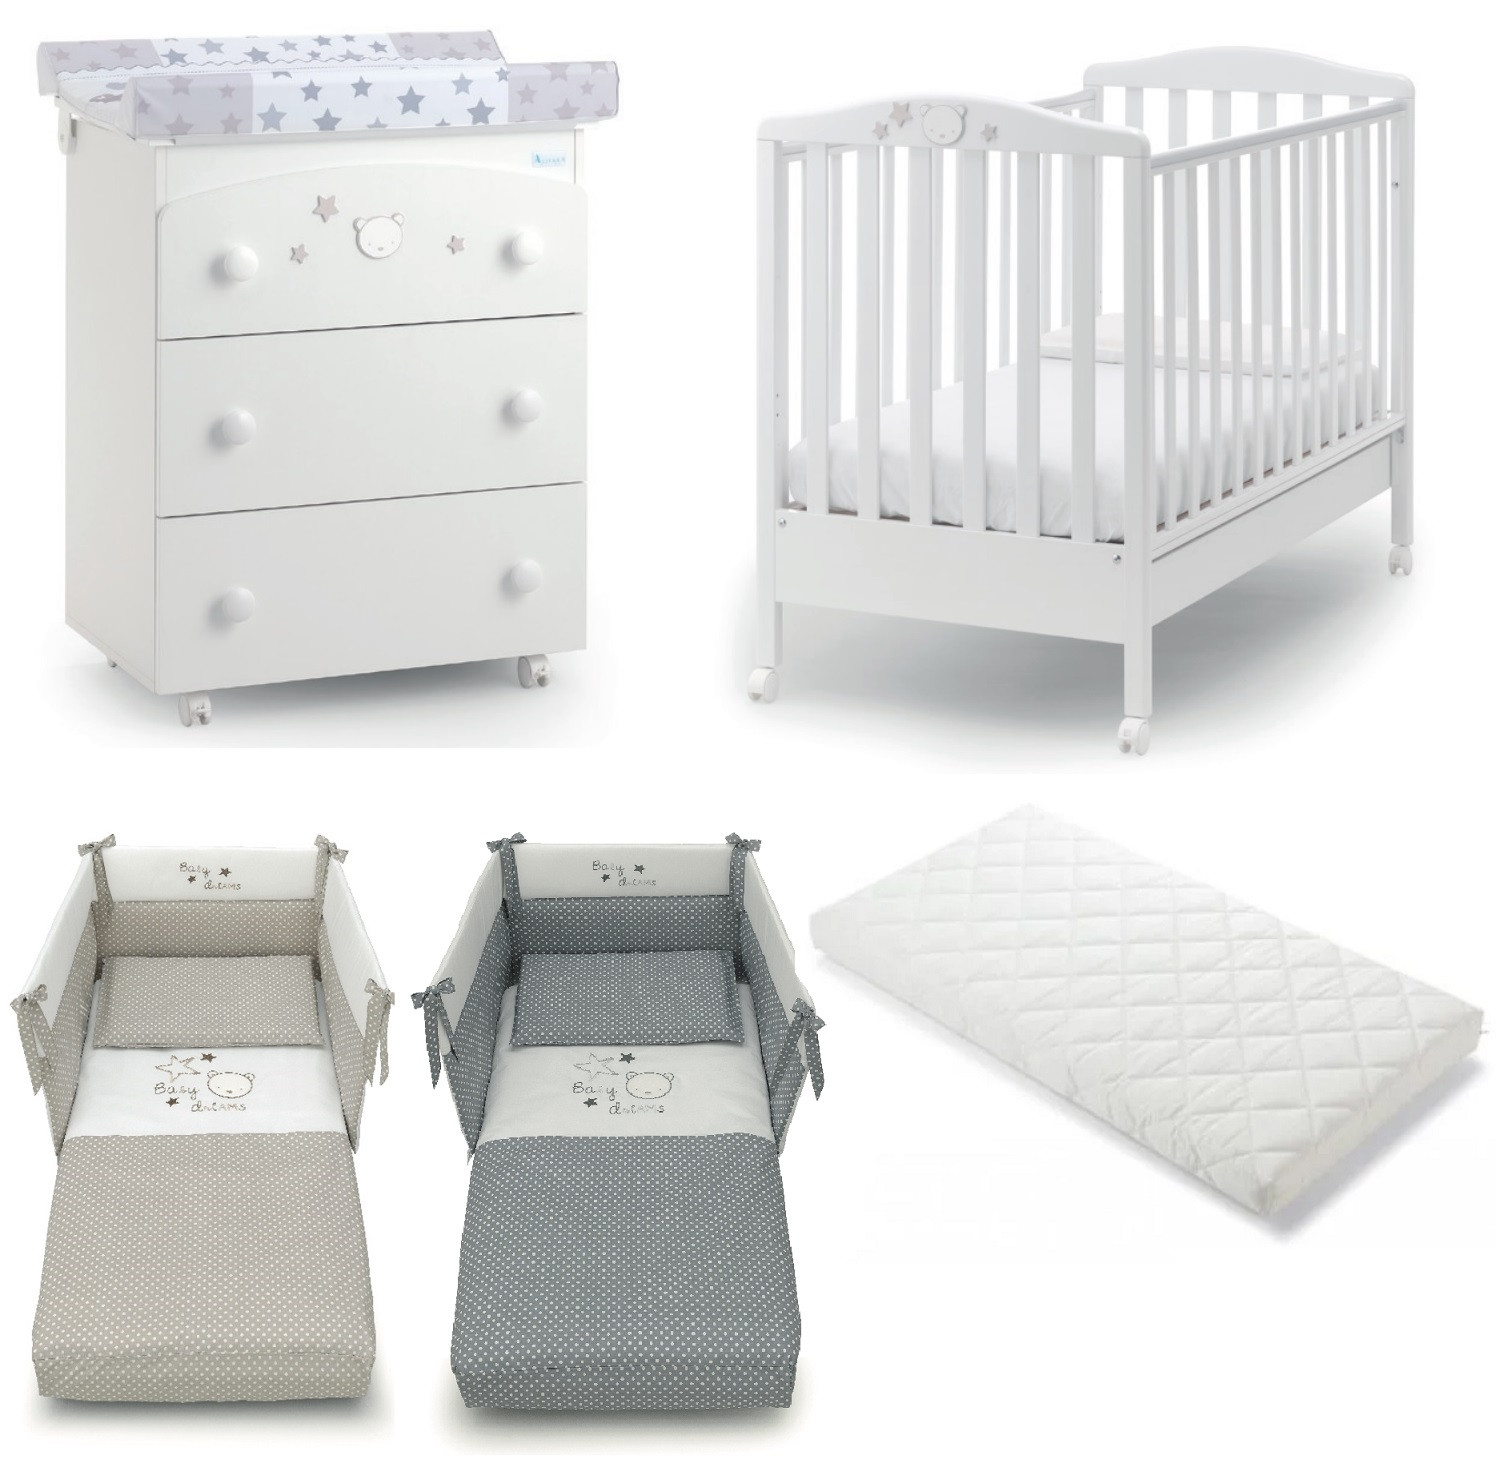 Offerta Azzurra Design Baby Dream - Lettino + Fasciatoio + Piumone e Materasso Omaggio